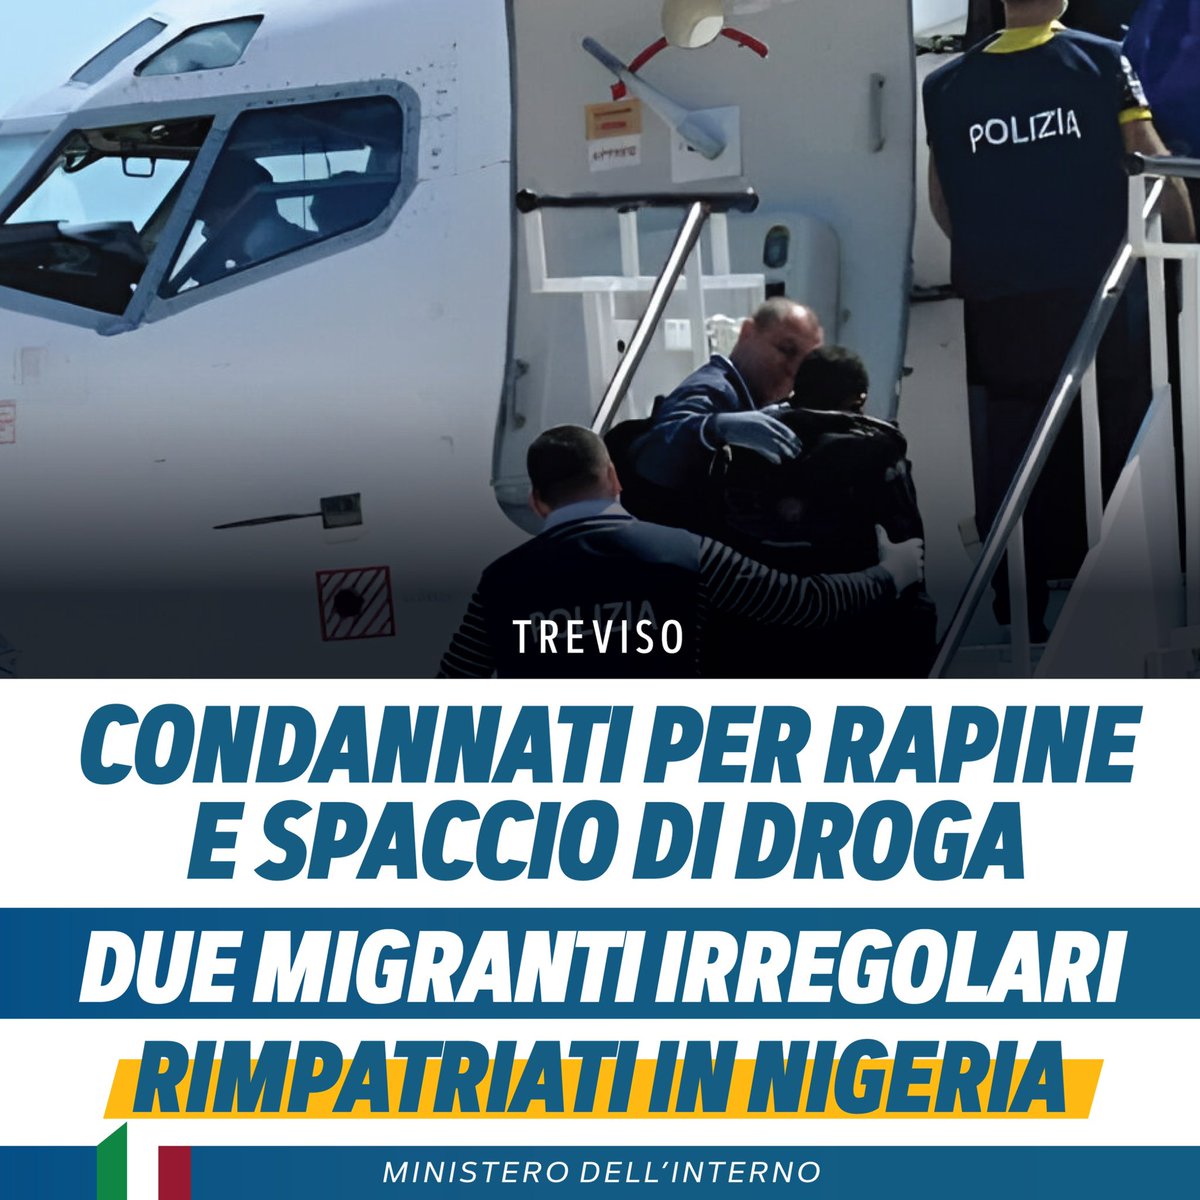 Due migranti irregolari, dopo aver scontato in carcere a Treviso condanne per droga e rapina, sono stati espulsi e rimpatriati in Nigeria.